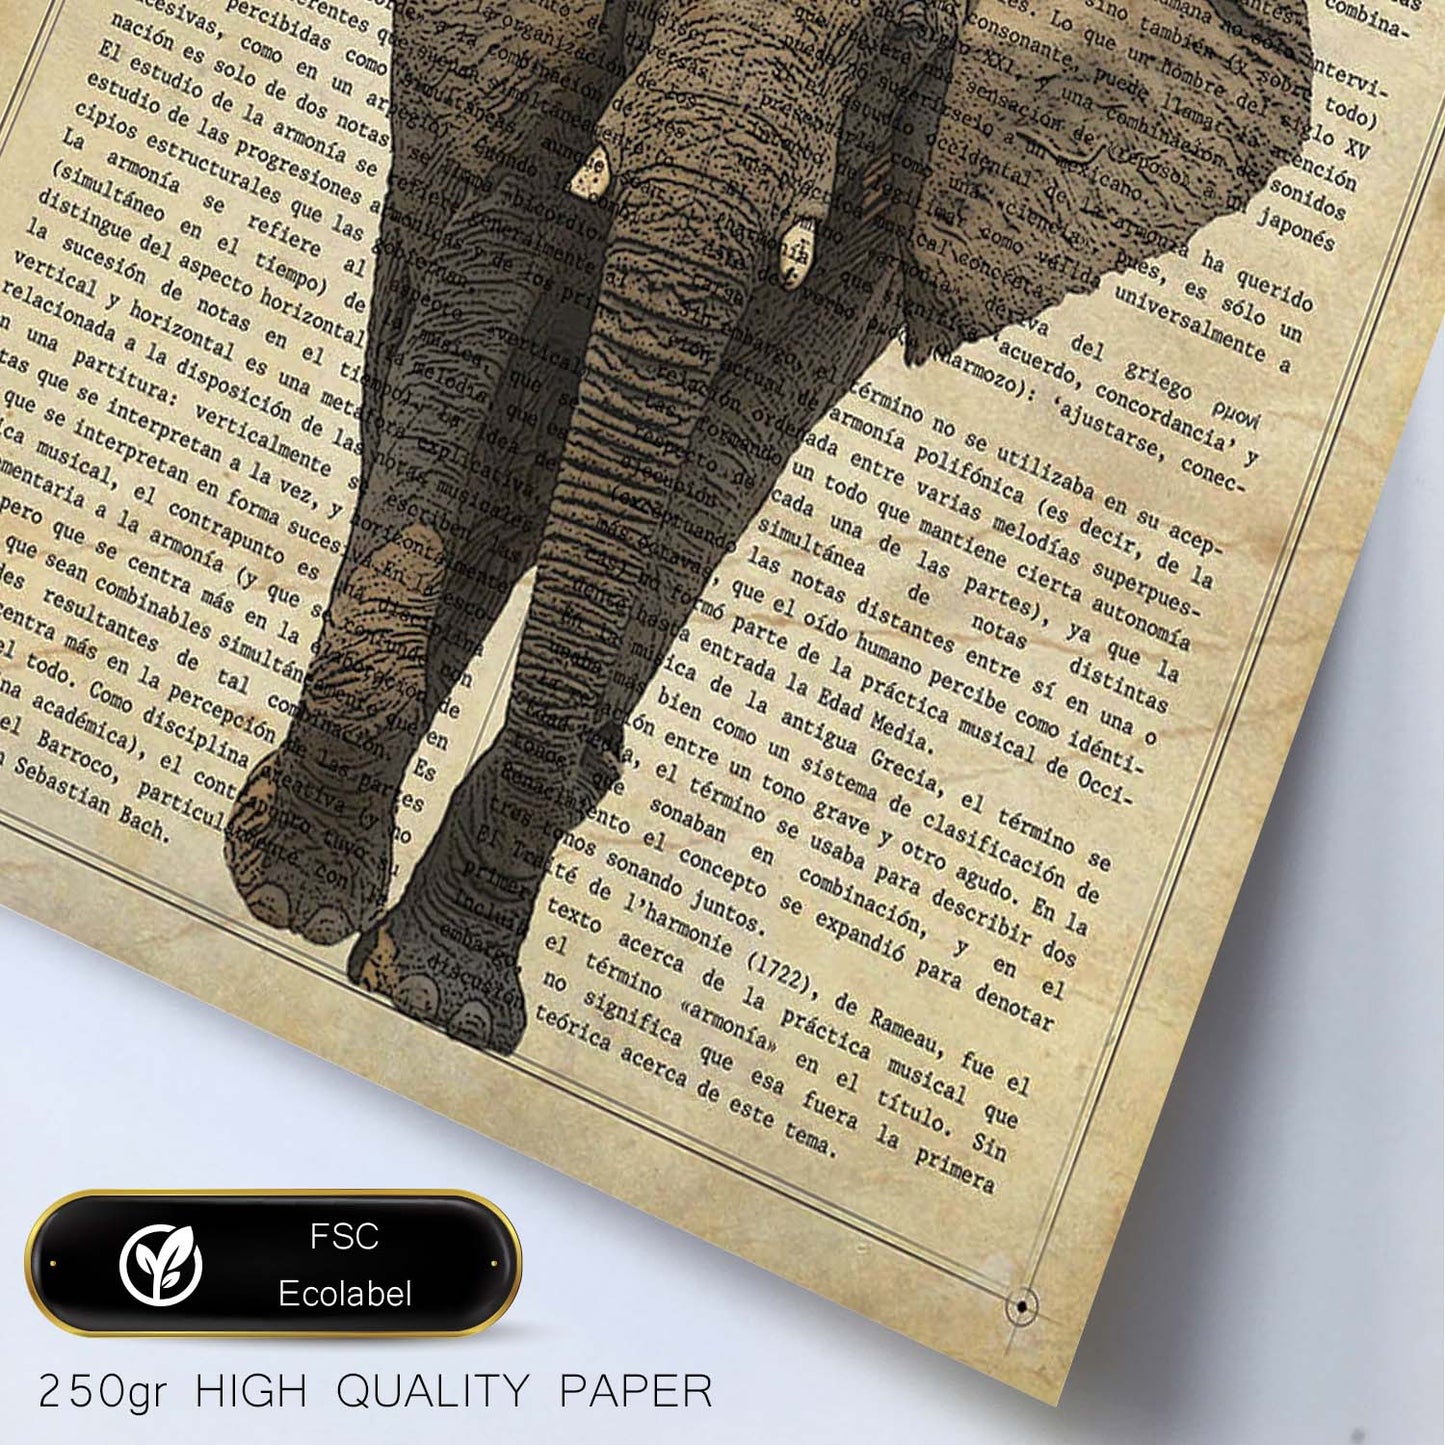 Poster de Elefante con corona. Láminas de elefantes con definiciones. Diseño con imágenes de elefantes y textos.-Artwork-Nacnic-Nacnic Estudio SL